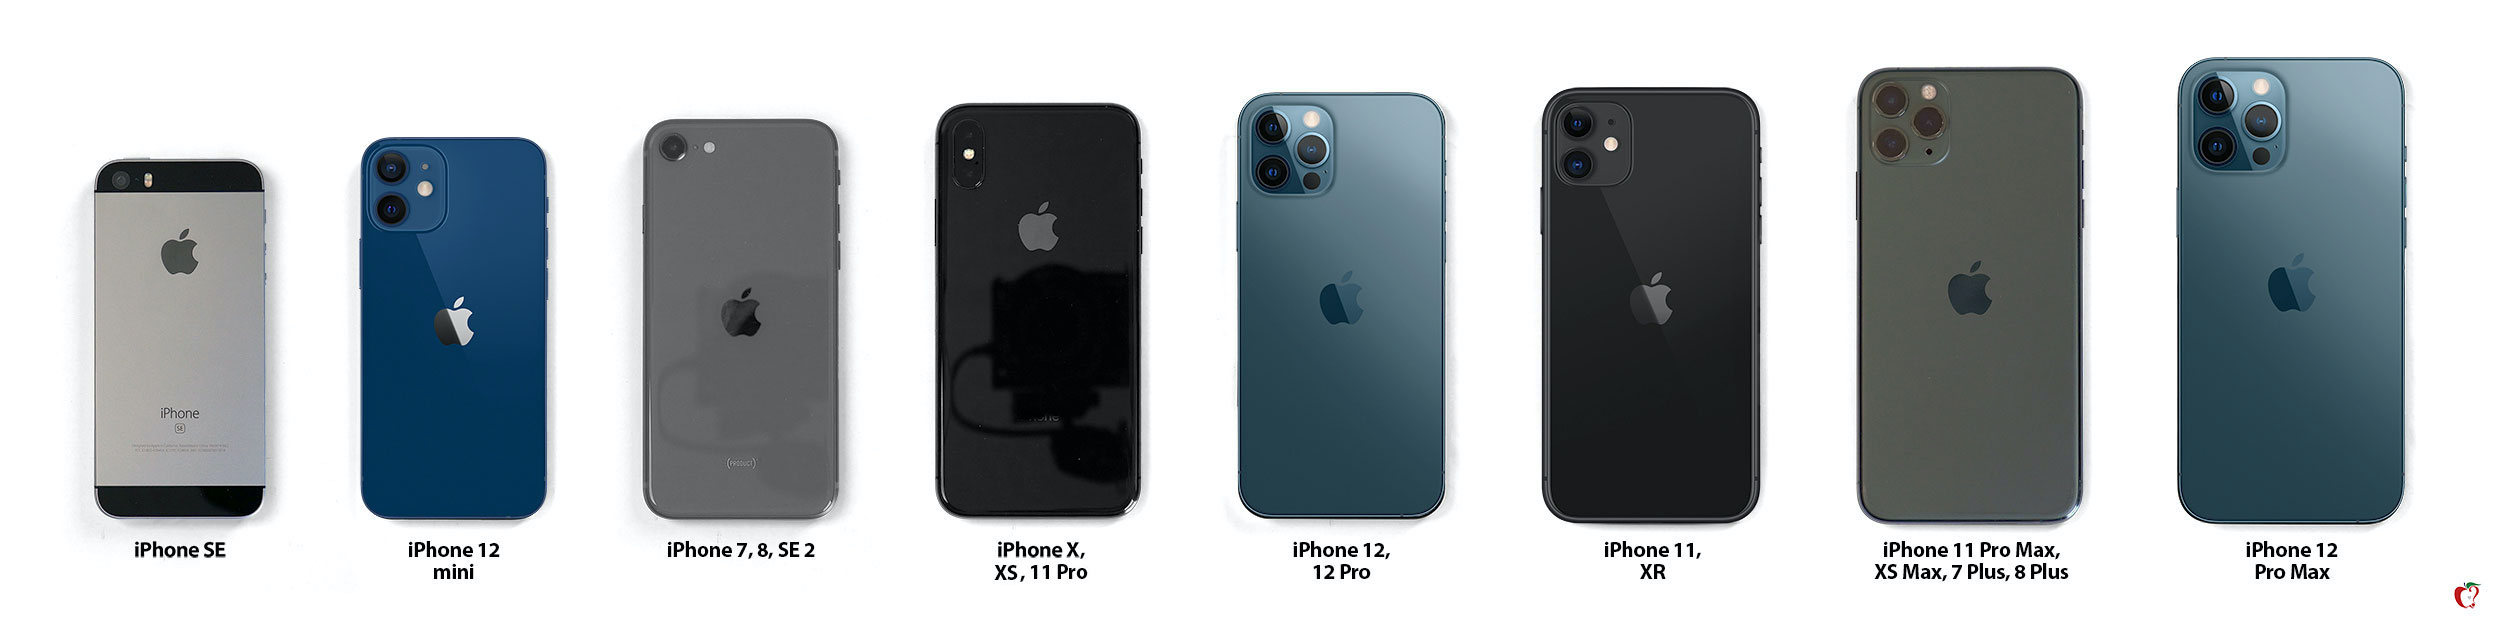 iphone size comparisons wide d